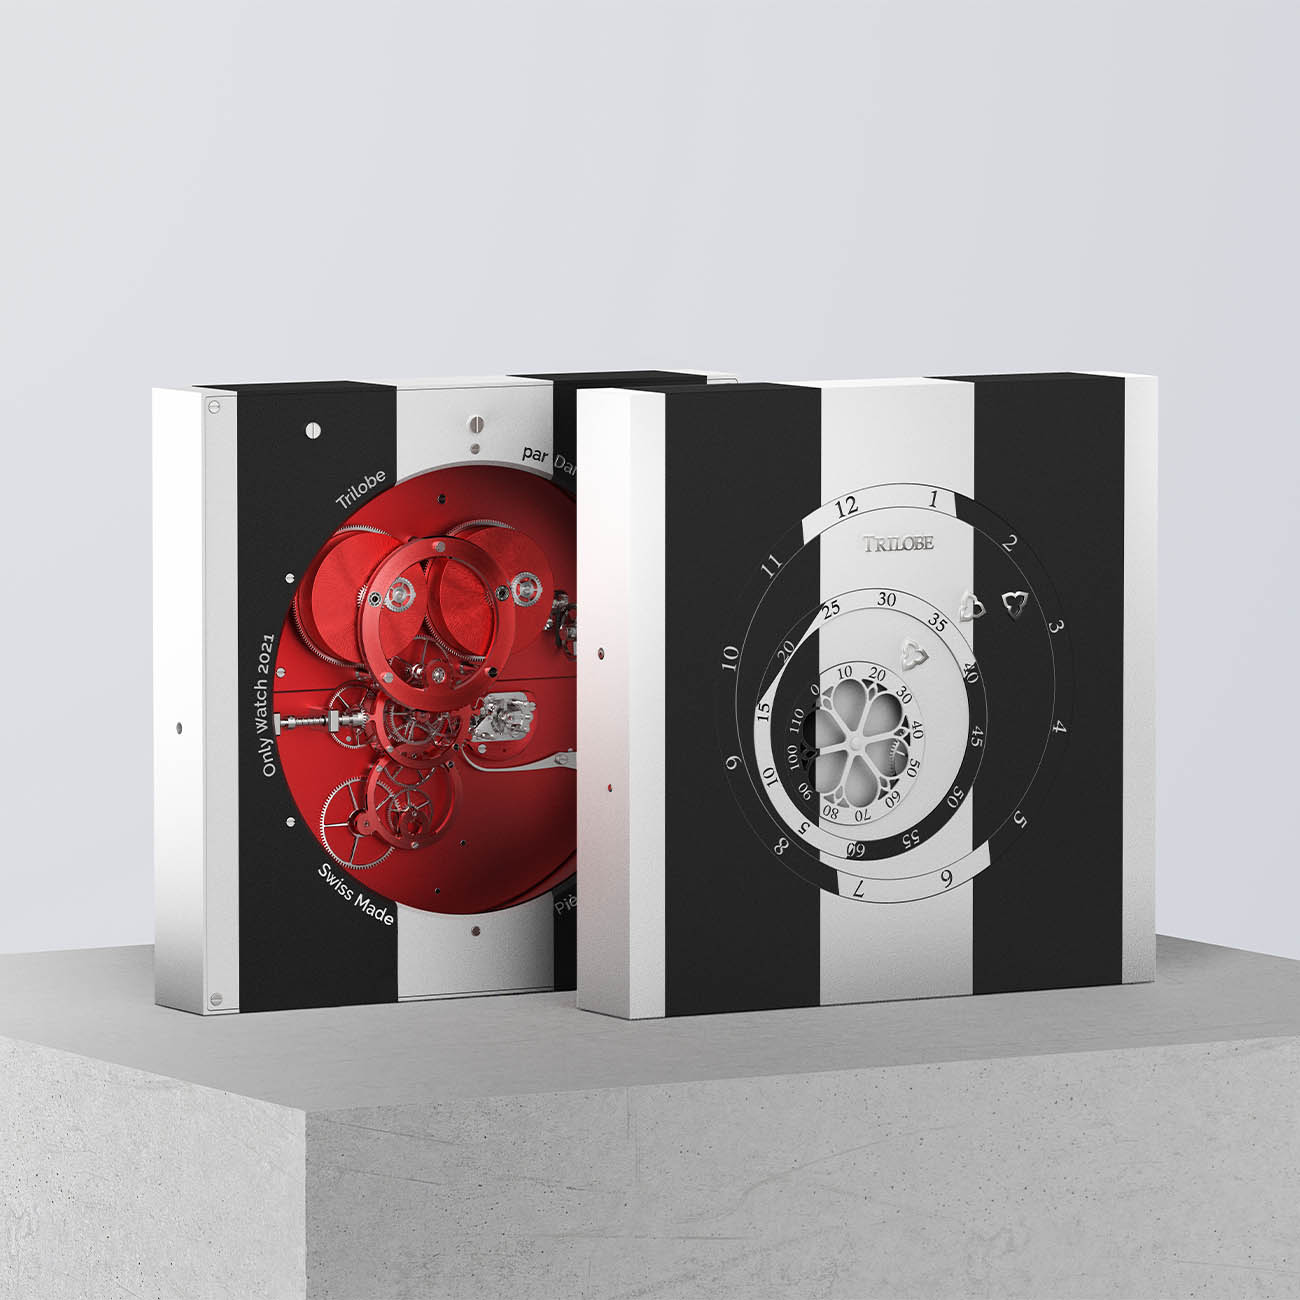 Обзор всех уникальных часов, которые будут выставлены на аукцион Only Watch 2021